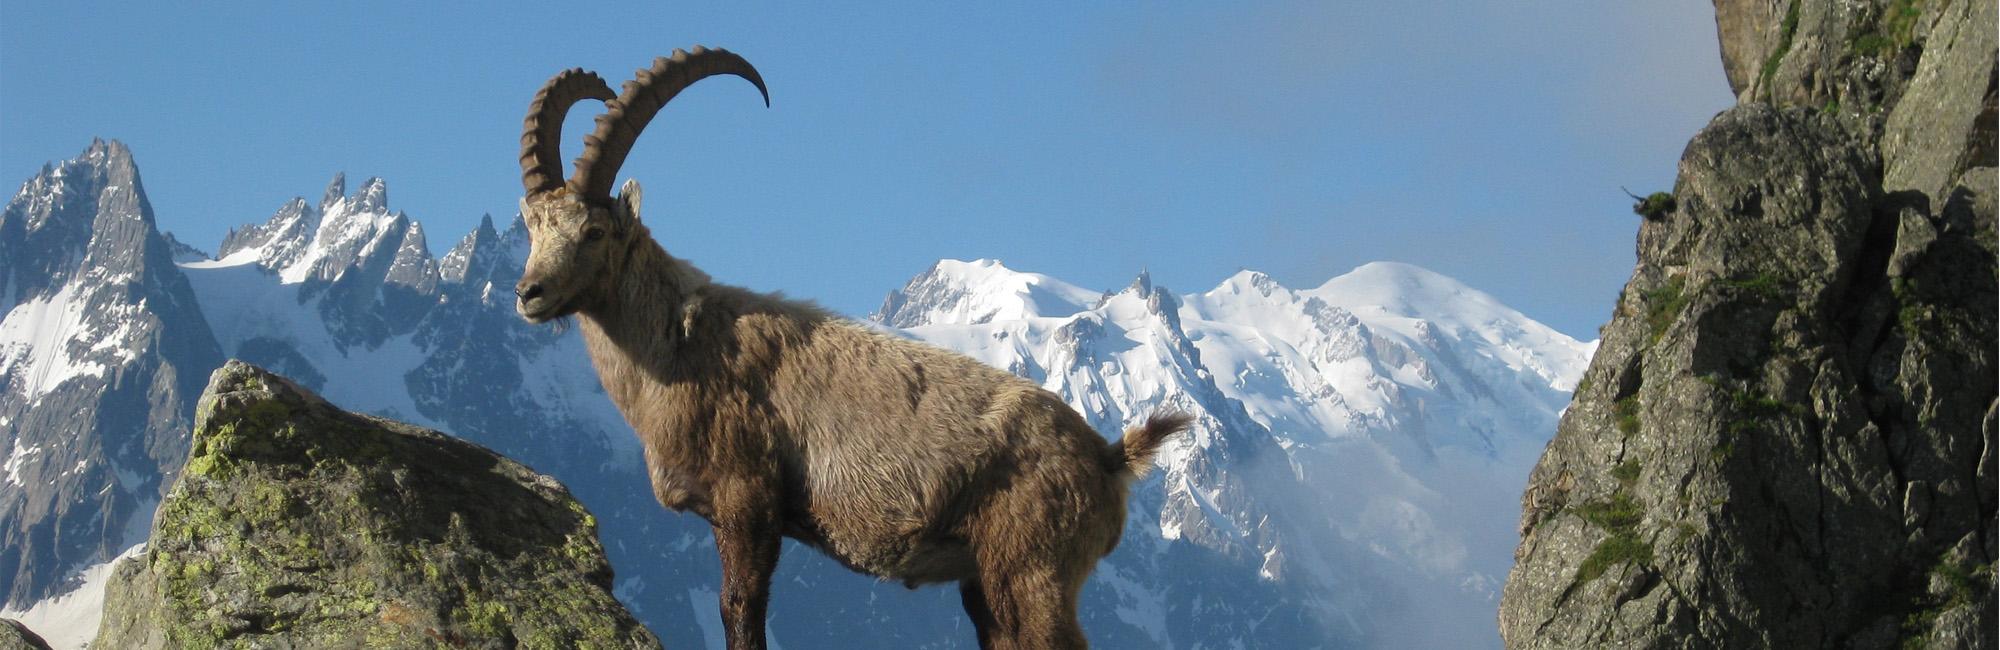 Cabra montesa en Los Alpes